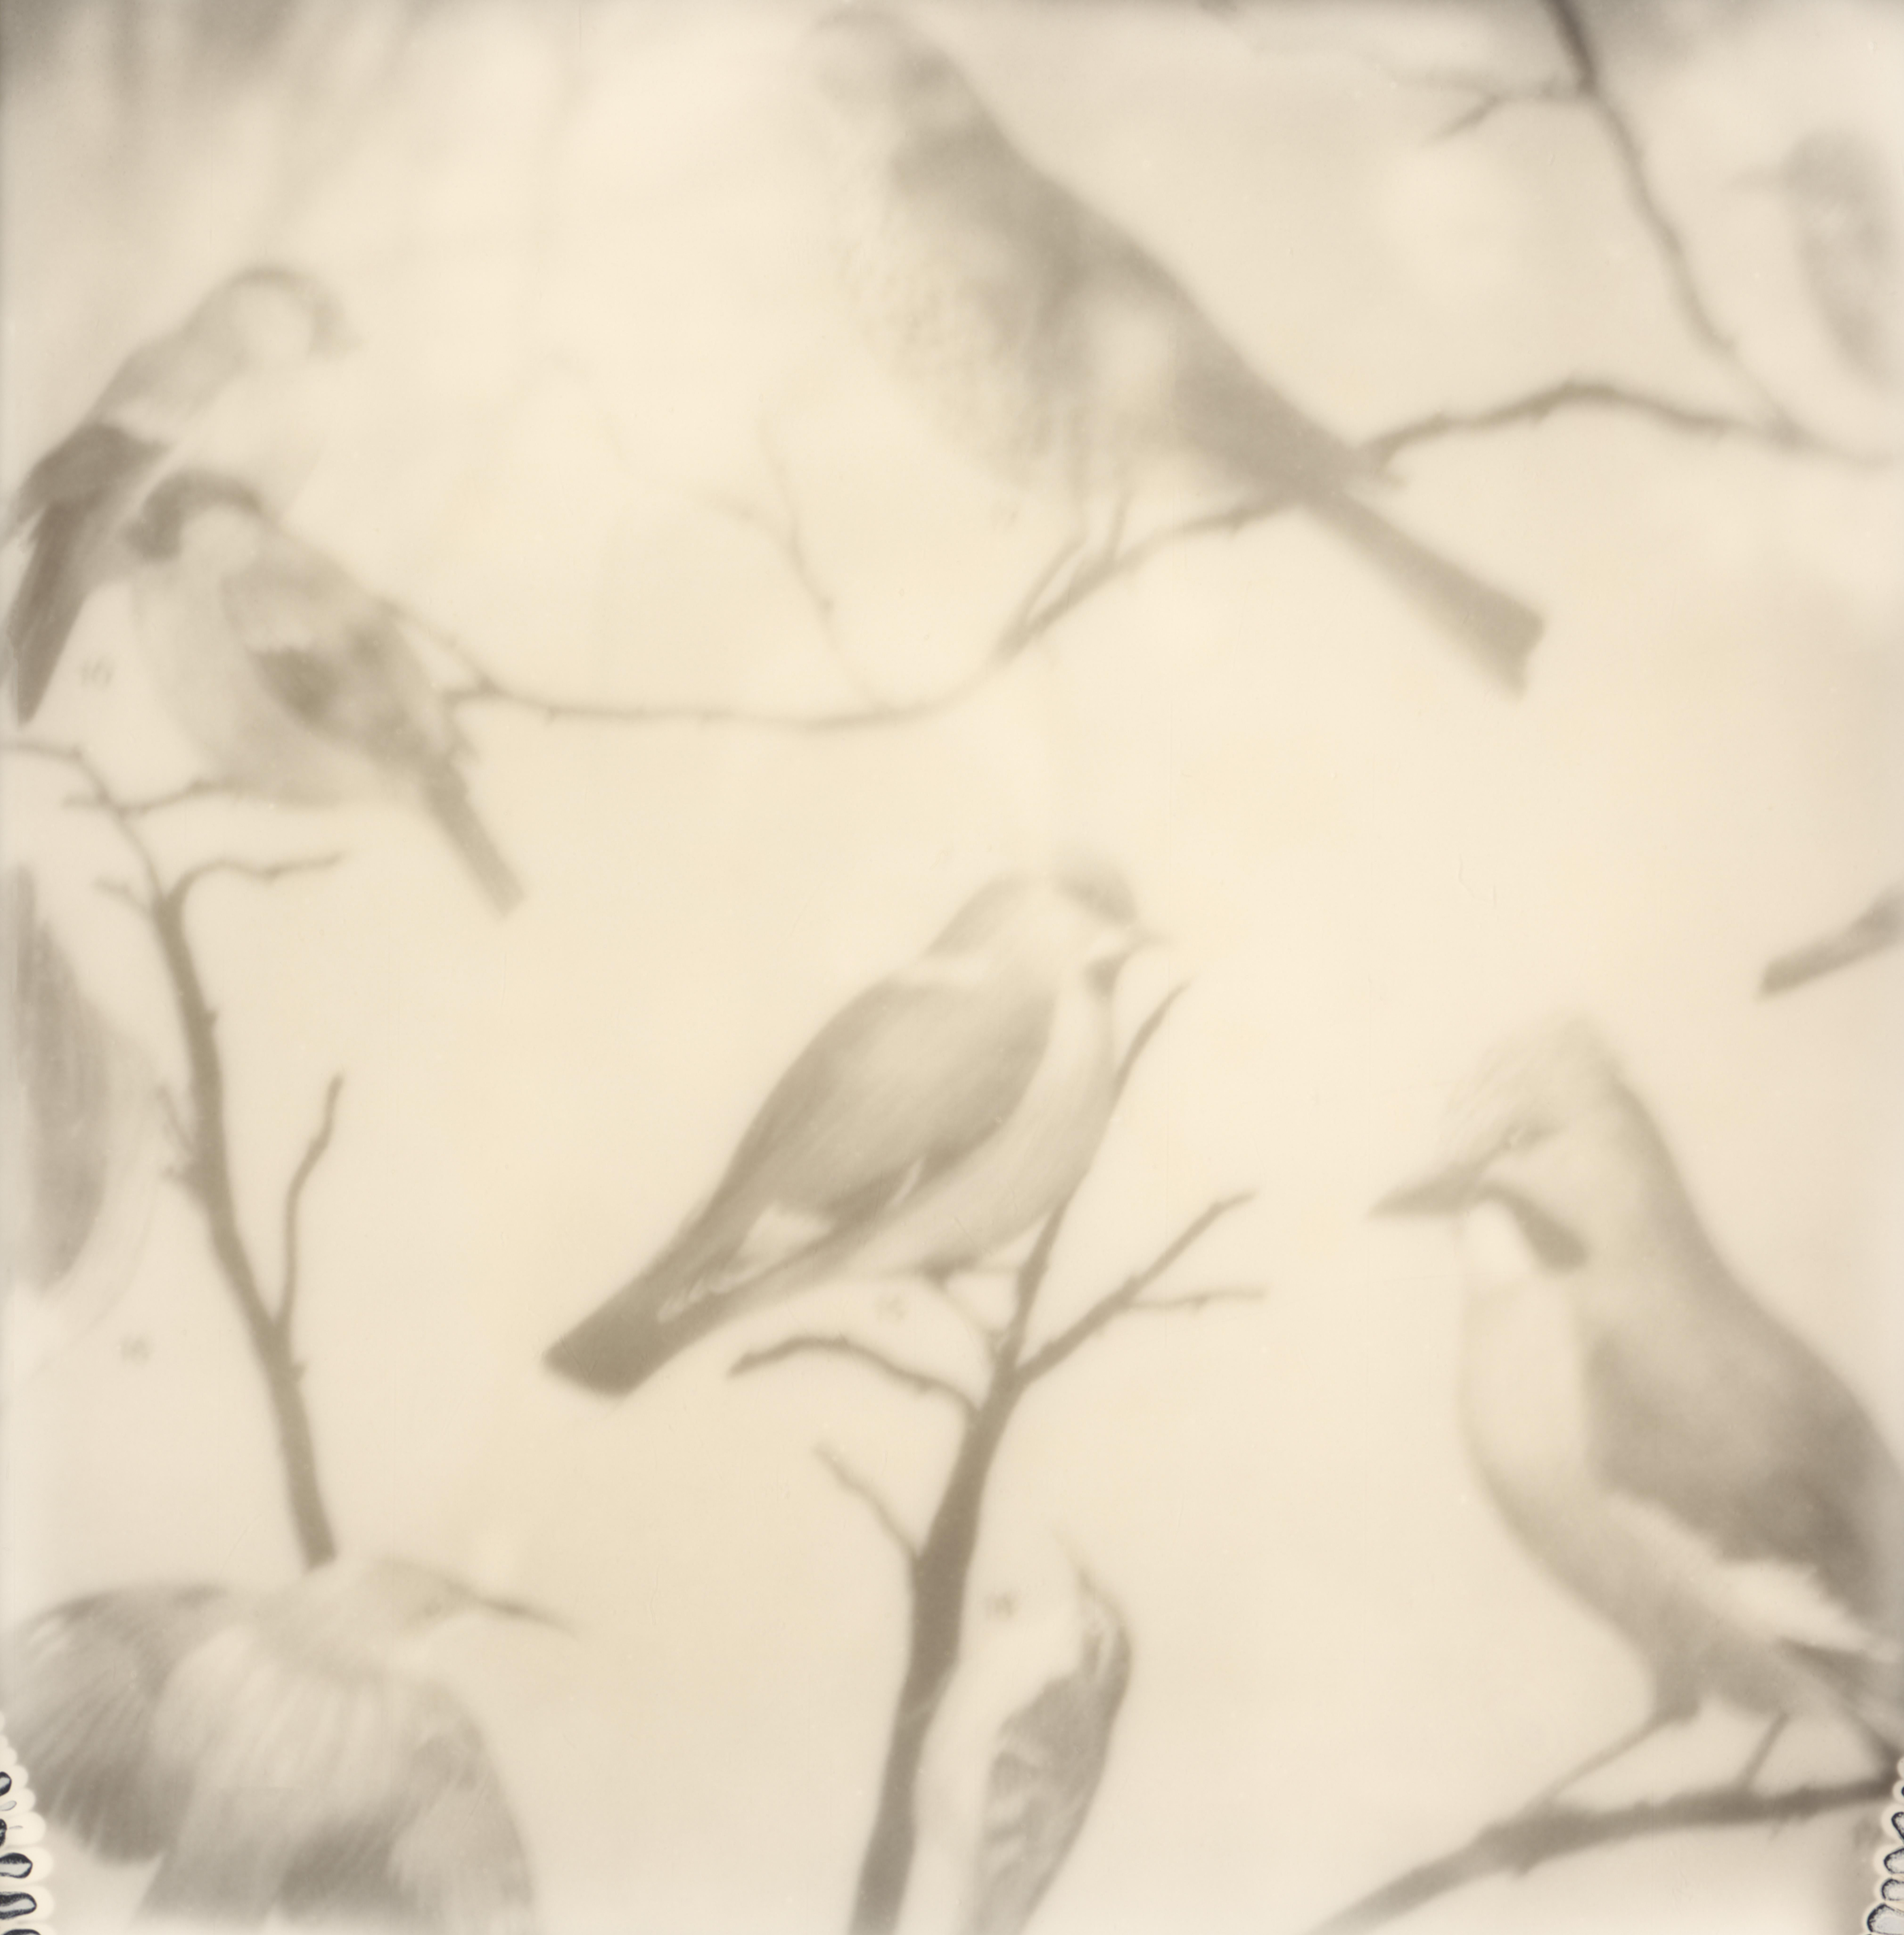 Impression oiseau - Nature morte - Impression photographique de film encadrée en noir et blanc